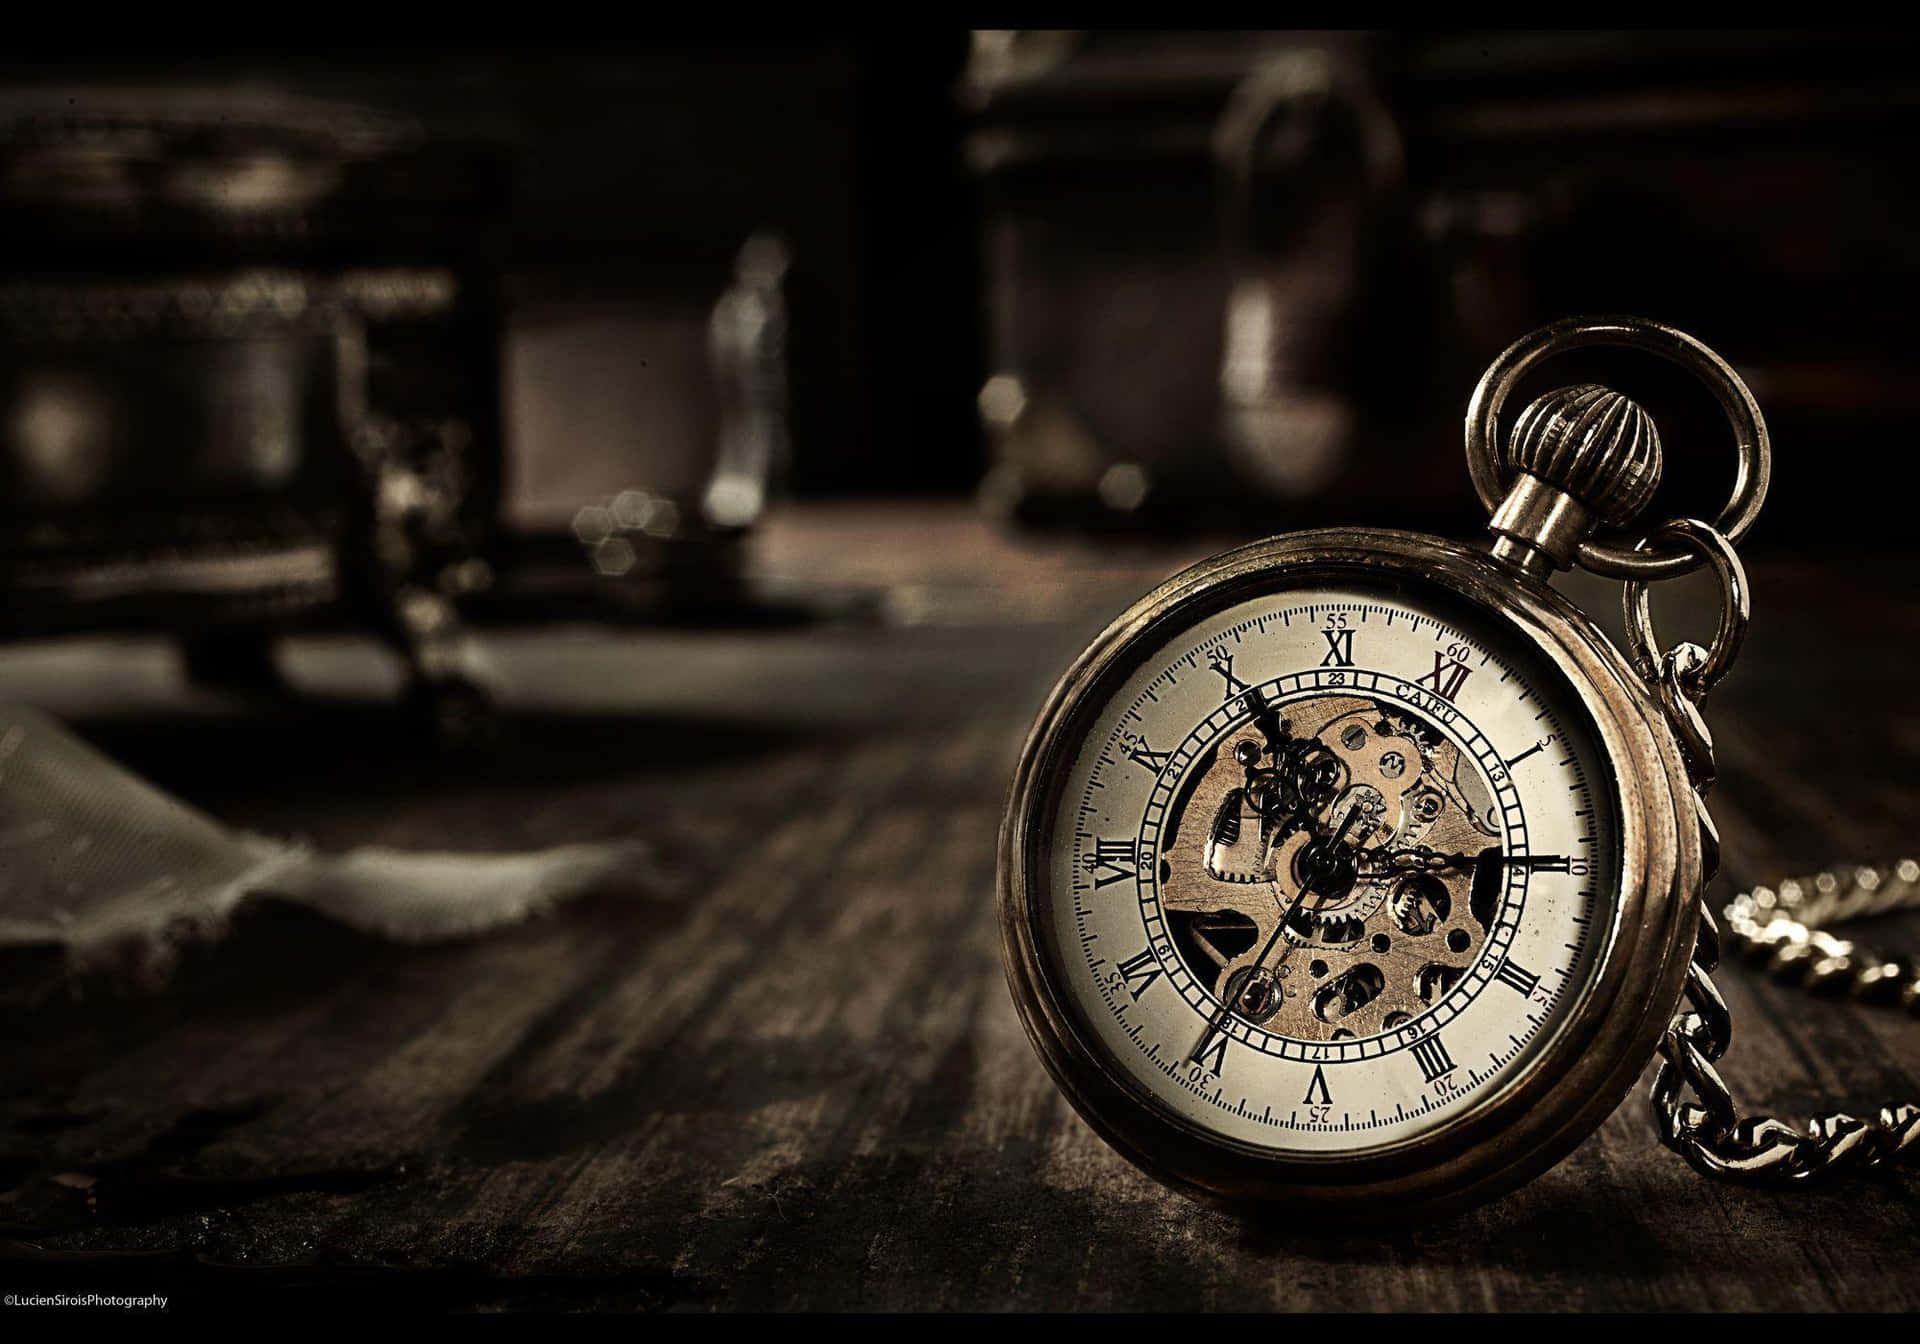 Imagenque Muestra La Belleza Del Paso Del Tiempo: Un Reloj Diseñado Con Detalle En Un Estilo Vintage.